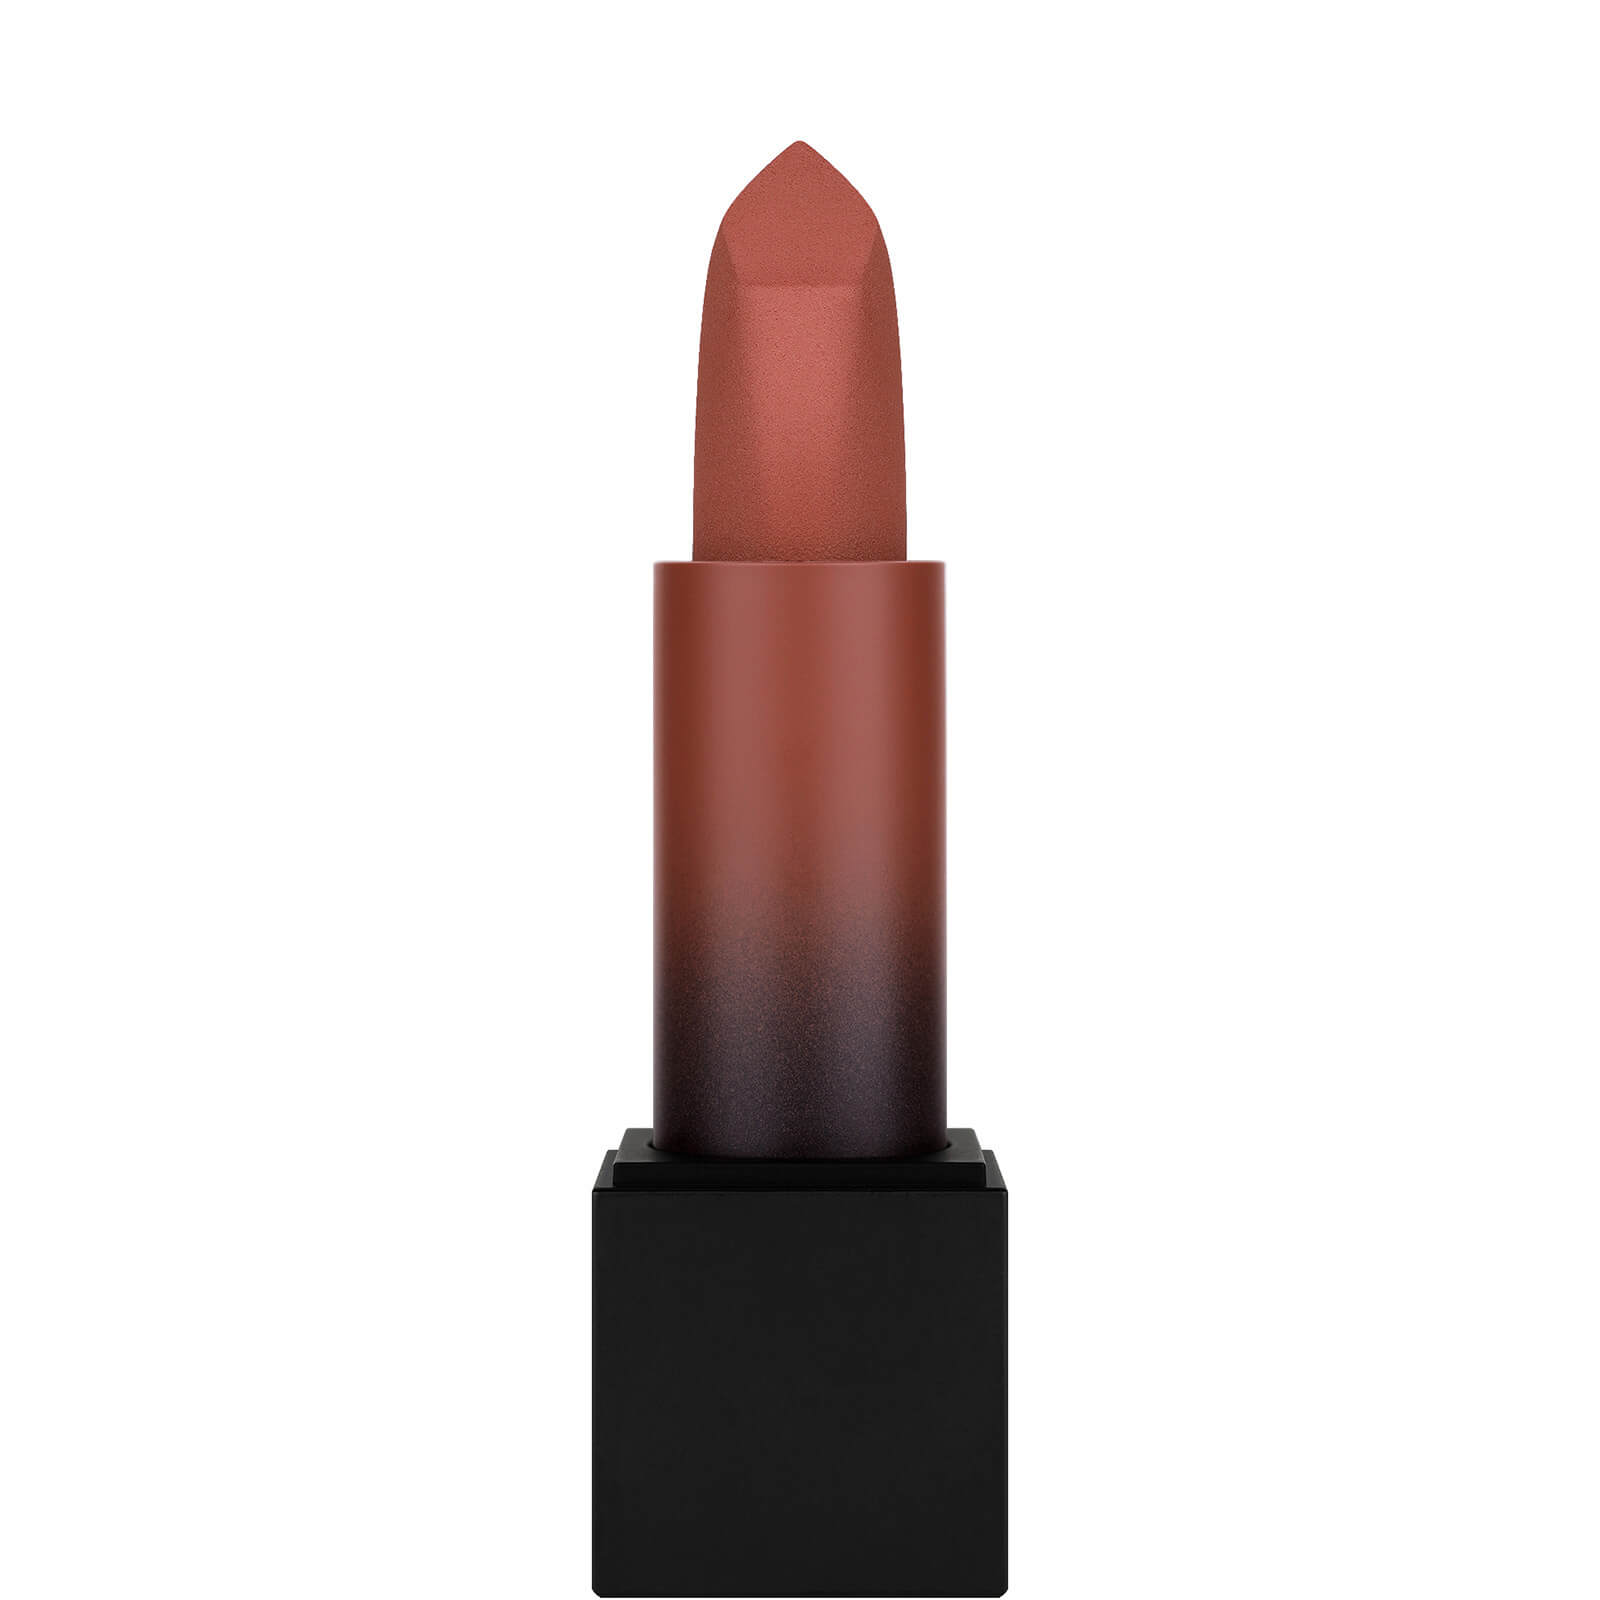 Photos - Lipstick & Lip Gloss Huda Beauty Power Bullet Matte Lipstick - Interview 